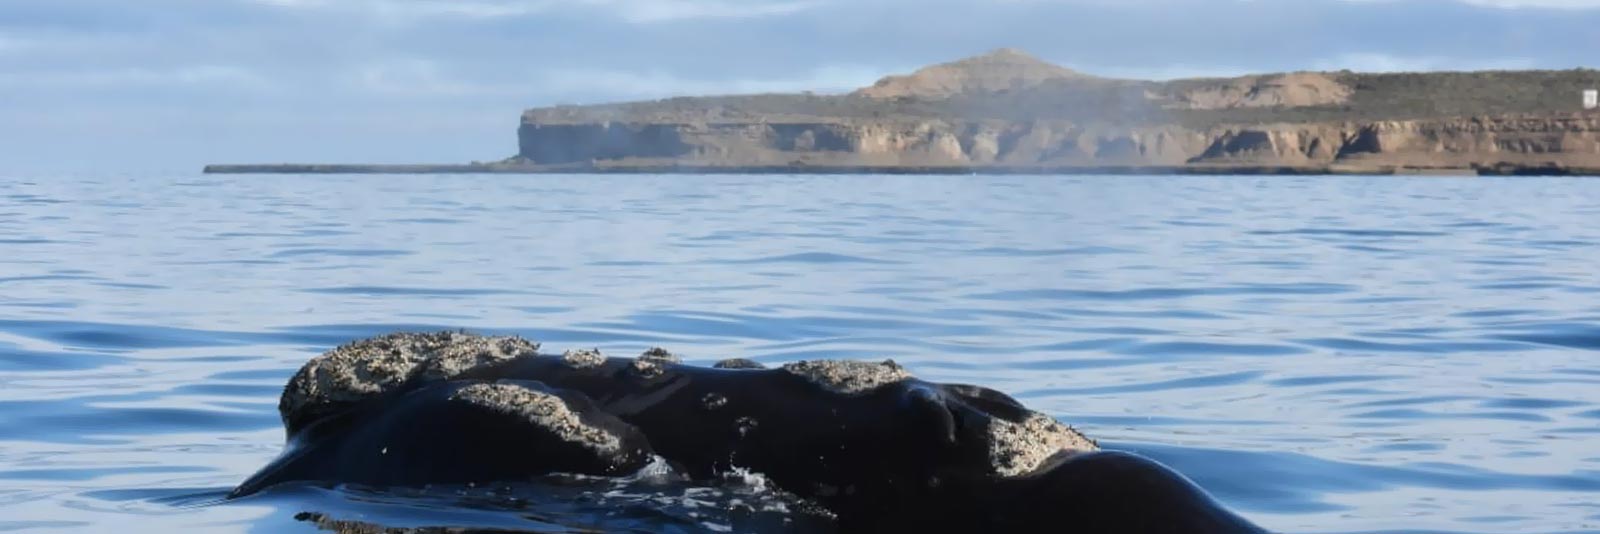 CAUSANA-avistaje-ballenas-embarcado